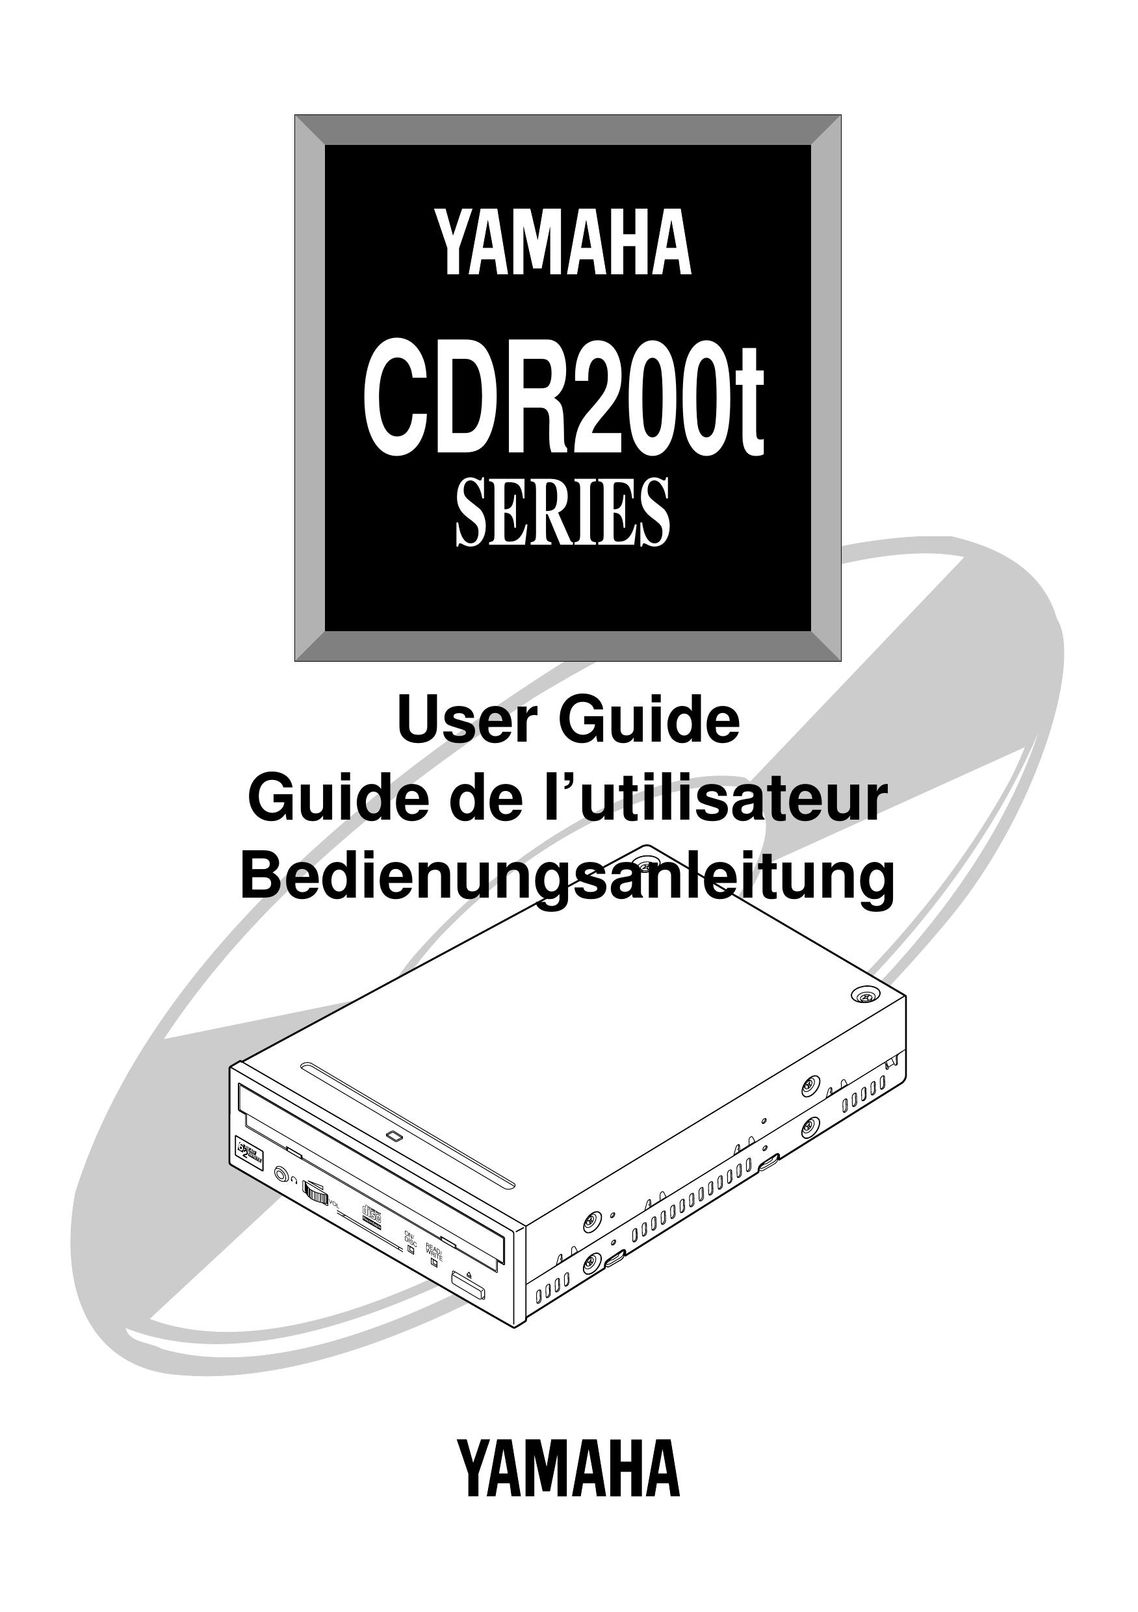 Yamaha CDR200t CD Player User Manual